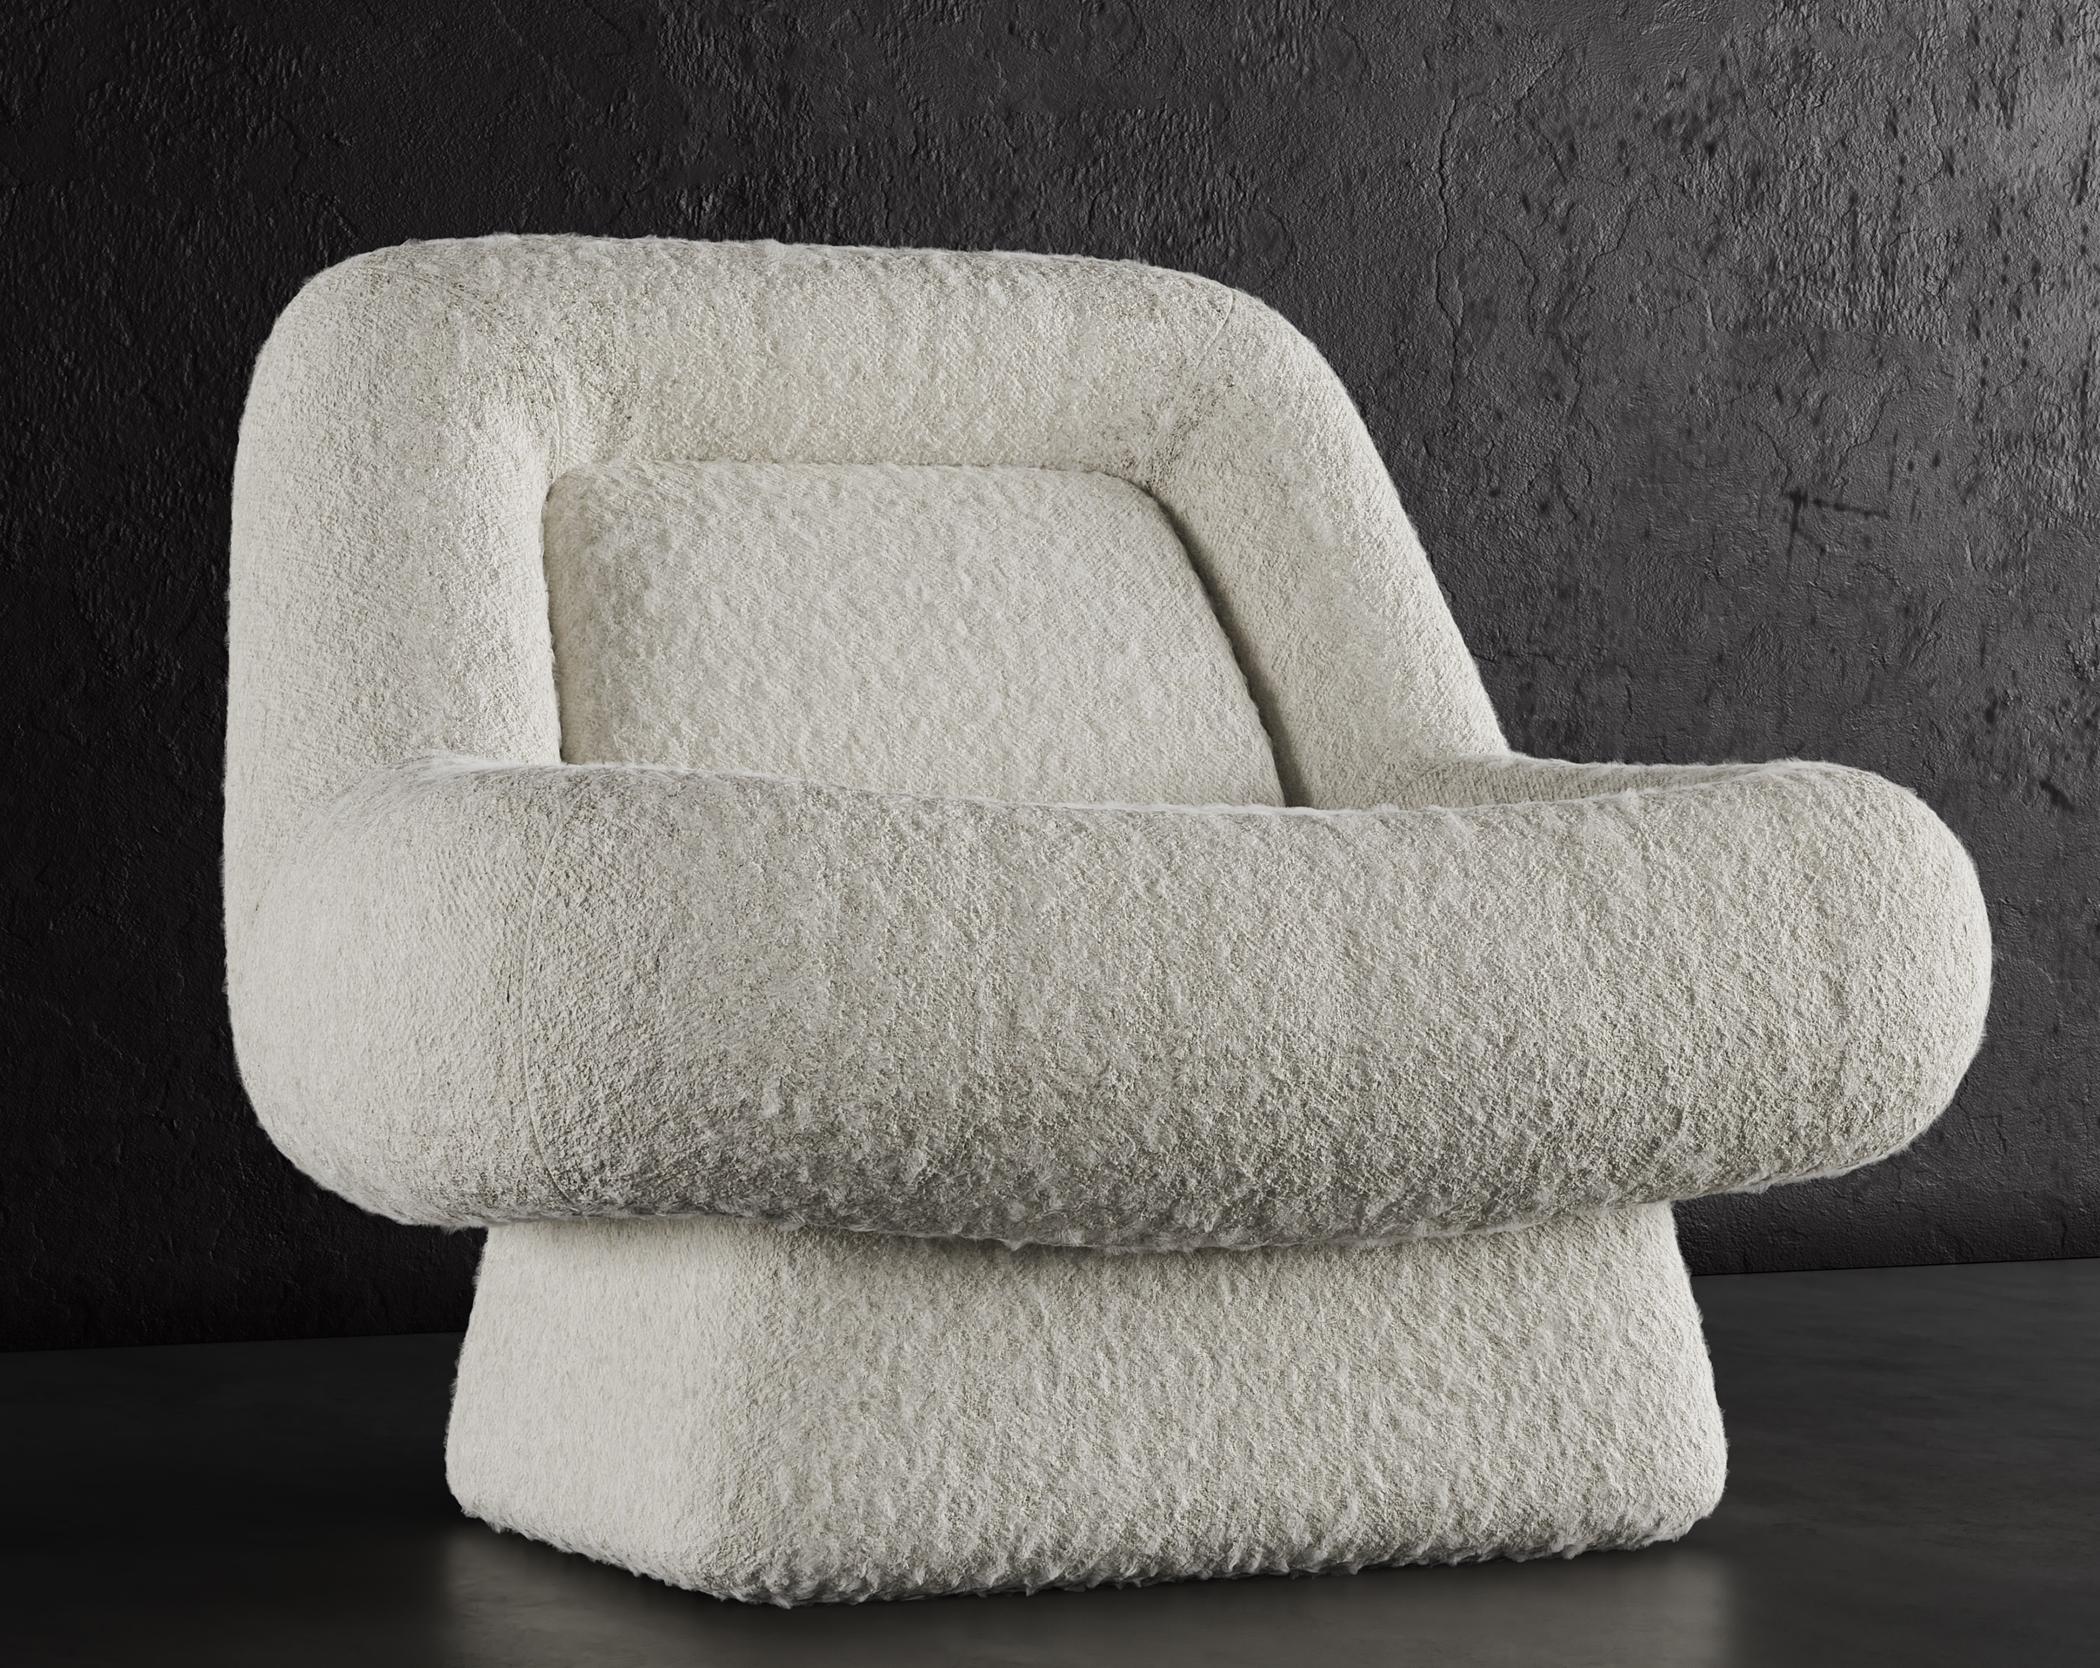 CHAISE WAVE - Design Modern en Boucle de Nuage en Blanc Chaud

La chaise longue Wave est un meuble moderne et élégant qui ajoutera une touche d'élégance à n'importe quelle pièce. Il est garni d'un luxueux tissu bouclé nuageux d'un blanc chaud, qui